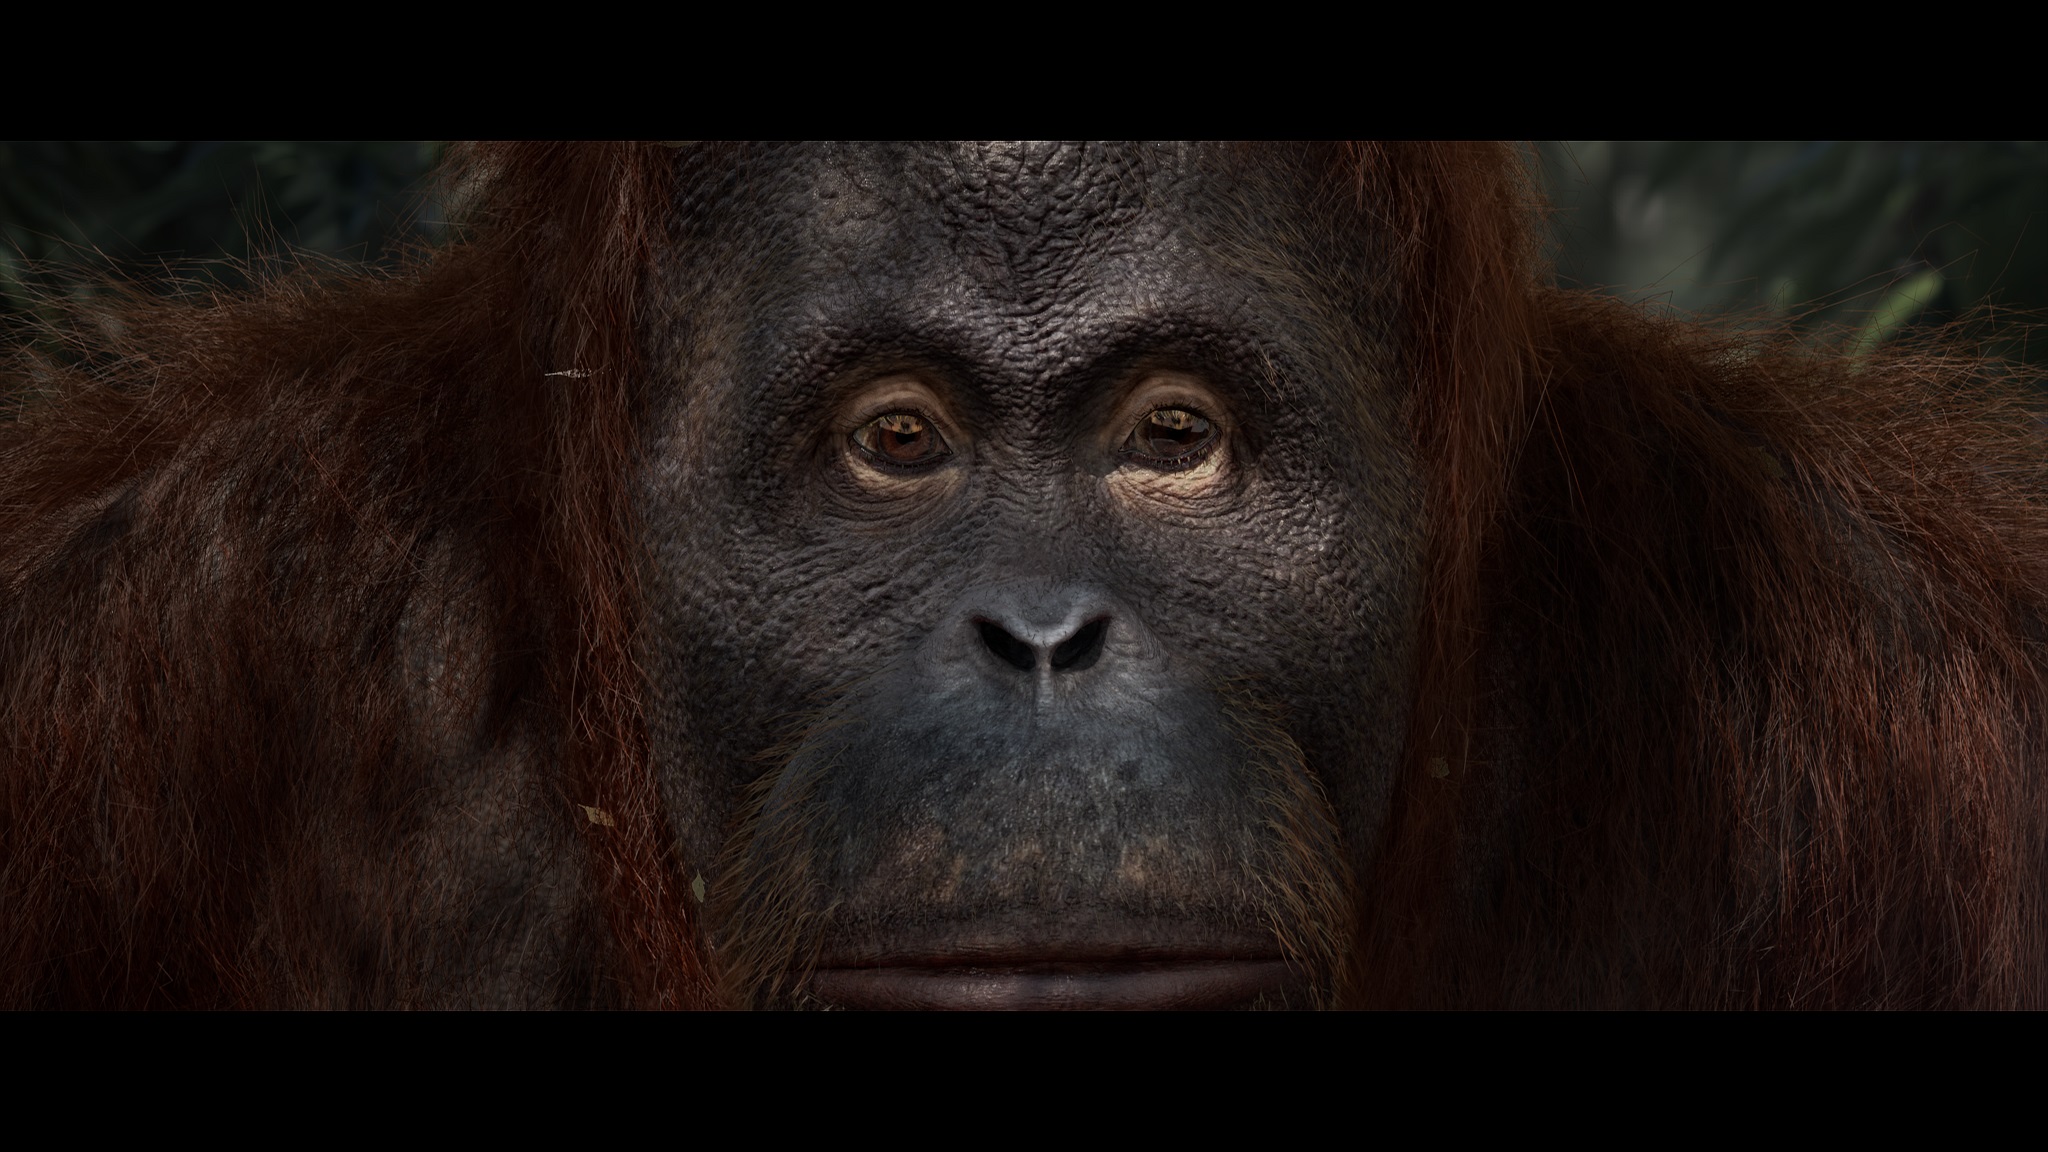 来自VES学生奖获奖影片《绿色》的镜头，展示了猩猩的面部表情。